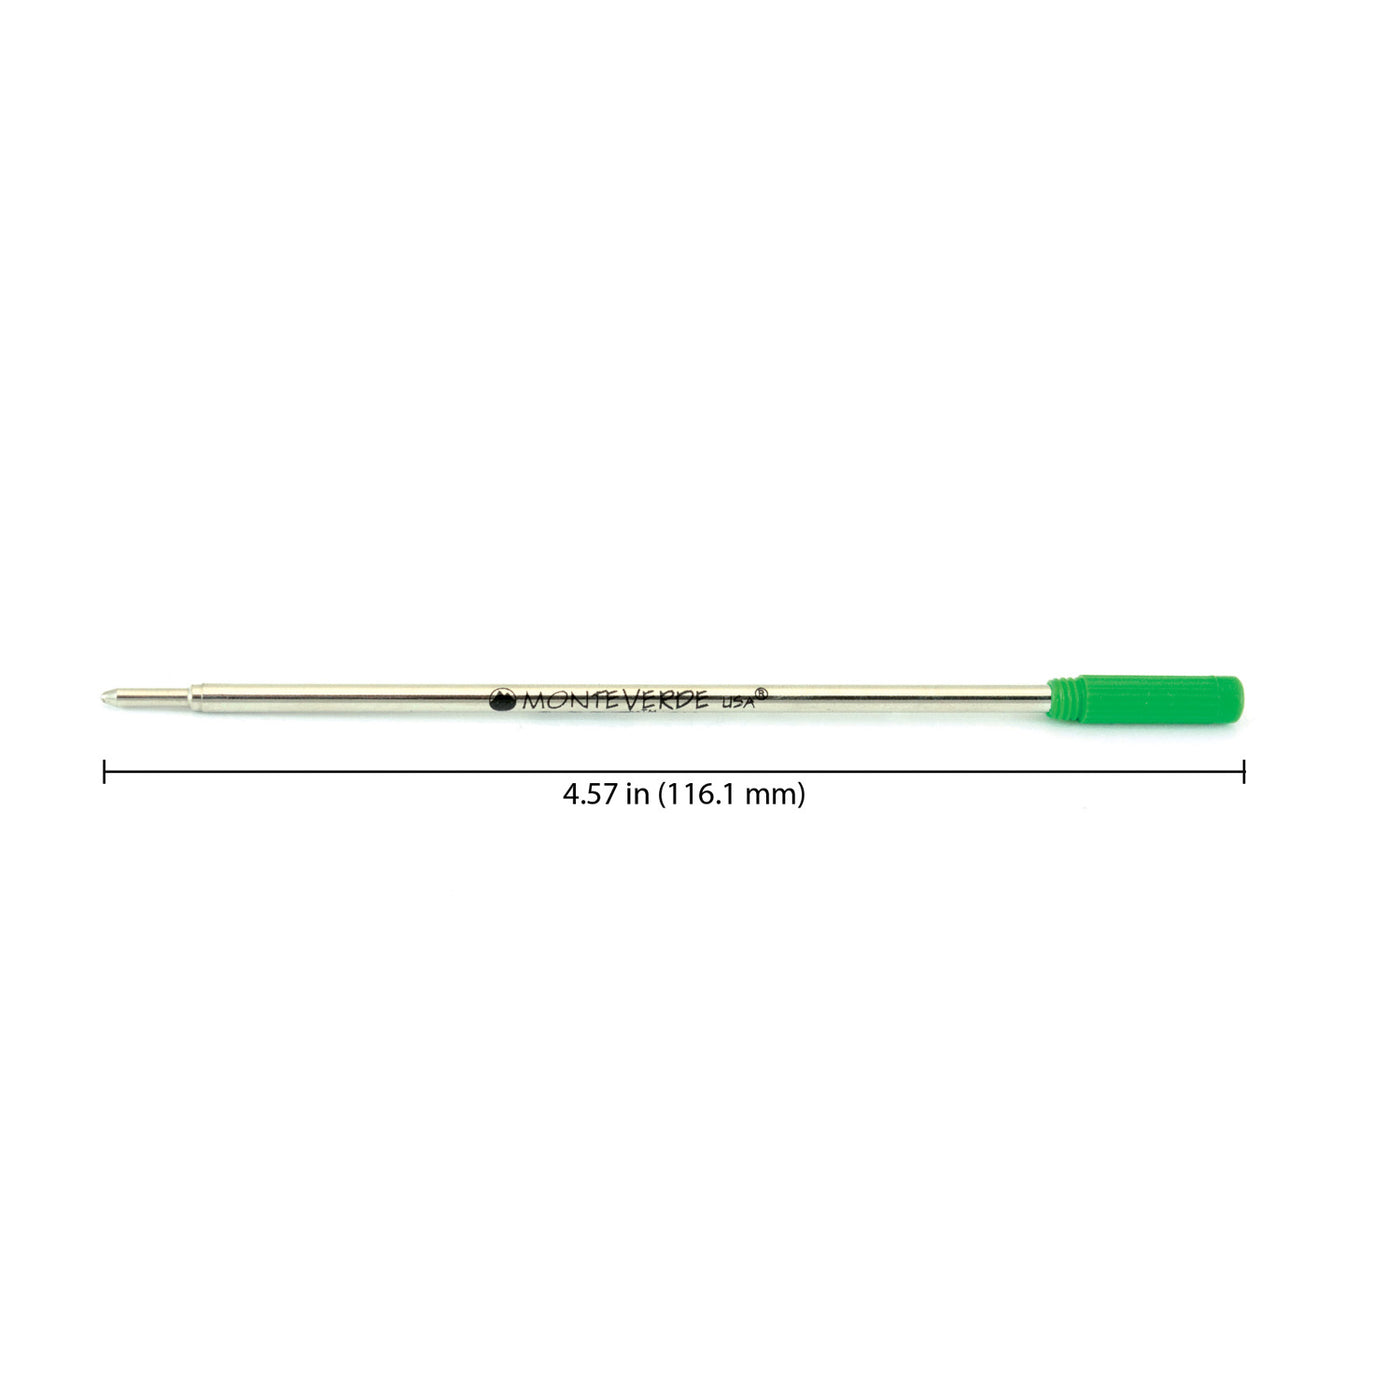 Monteverde Ball Pen Refill for Cross - Medium - Green - Pack of 2 2